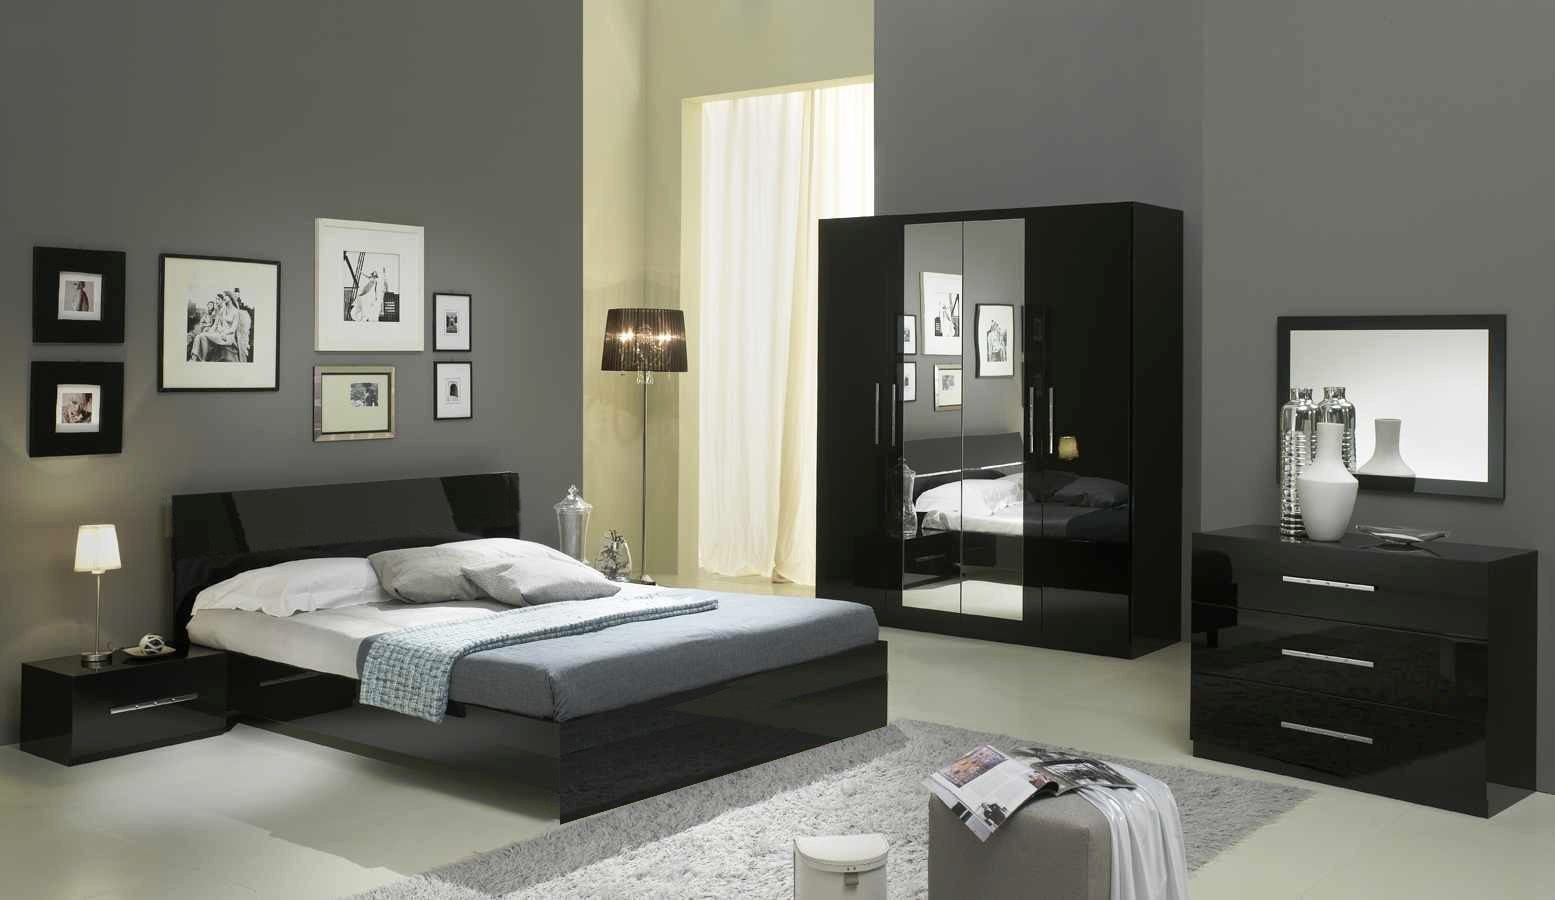 мебель для спальни красивая и недорогая